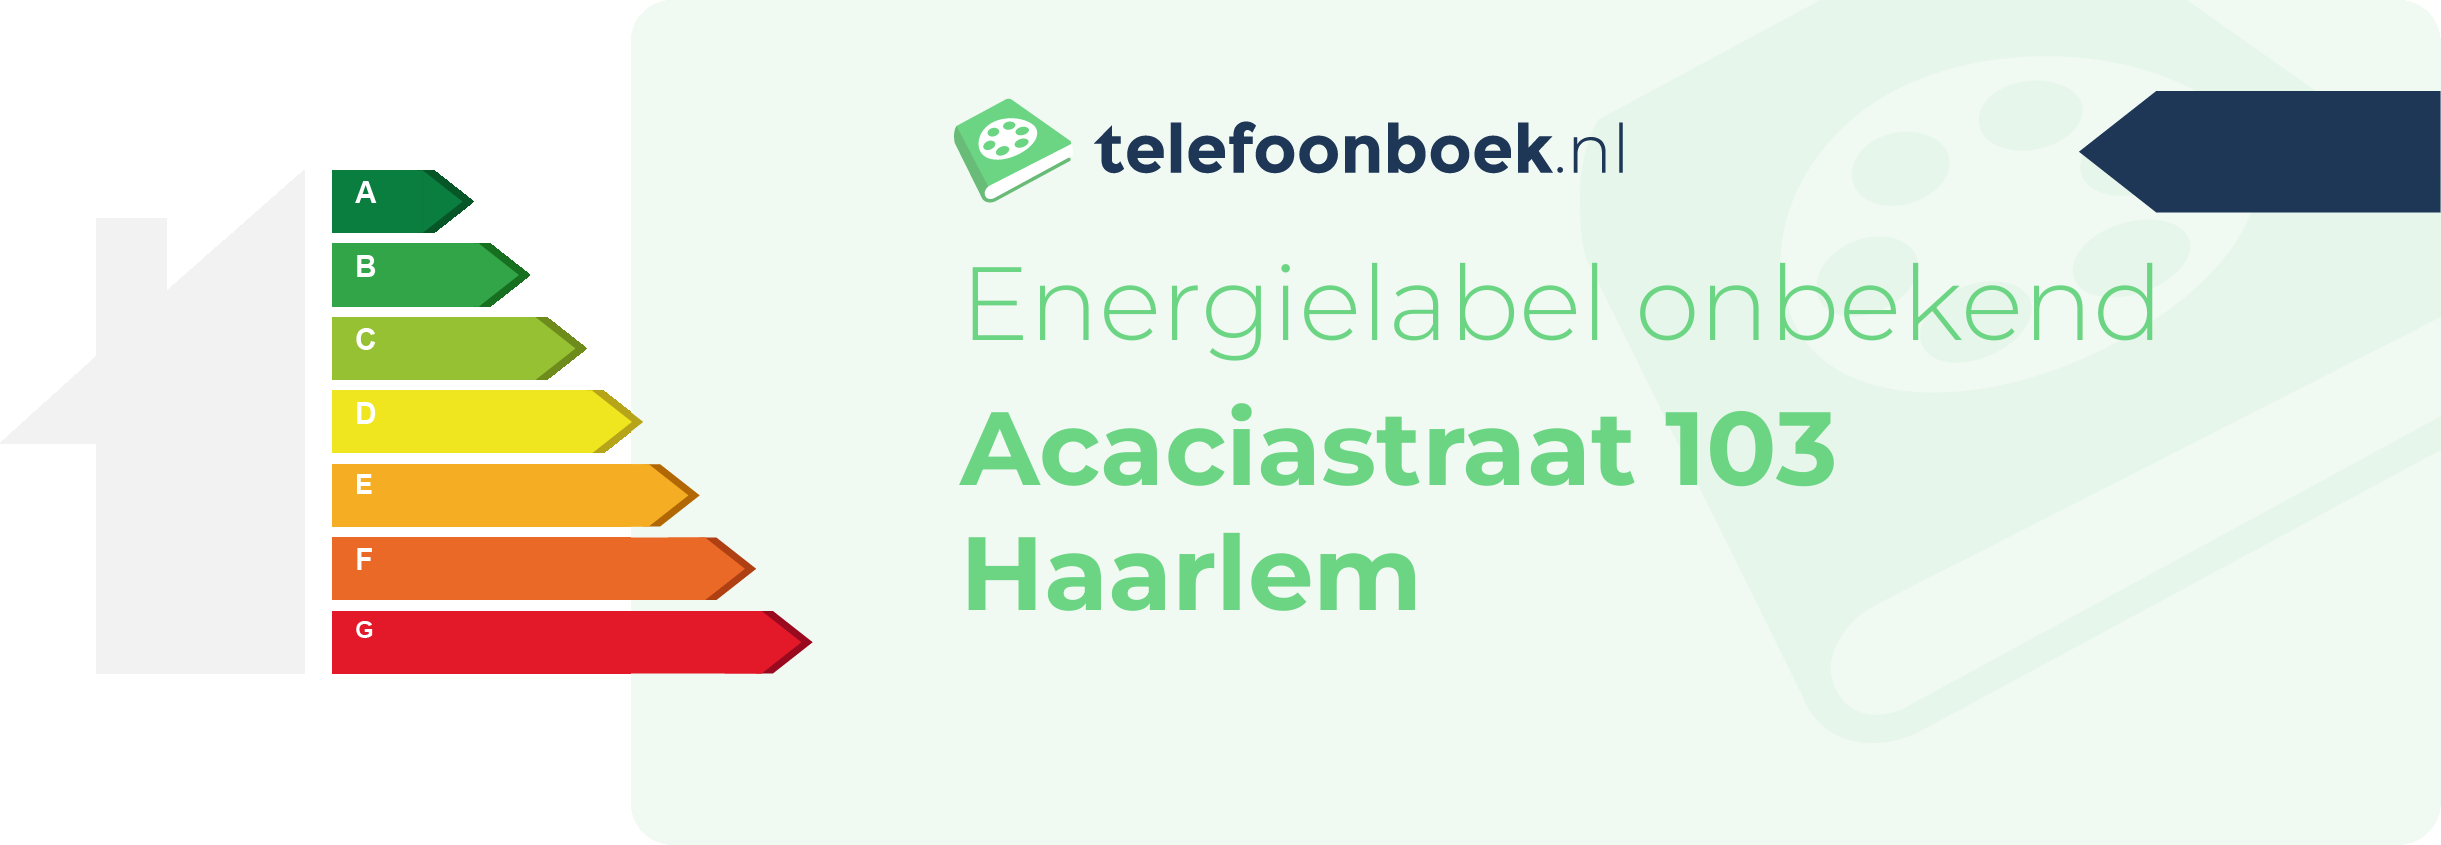 Energielabel Acaciastraat 103 Haarlem